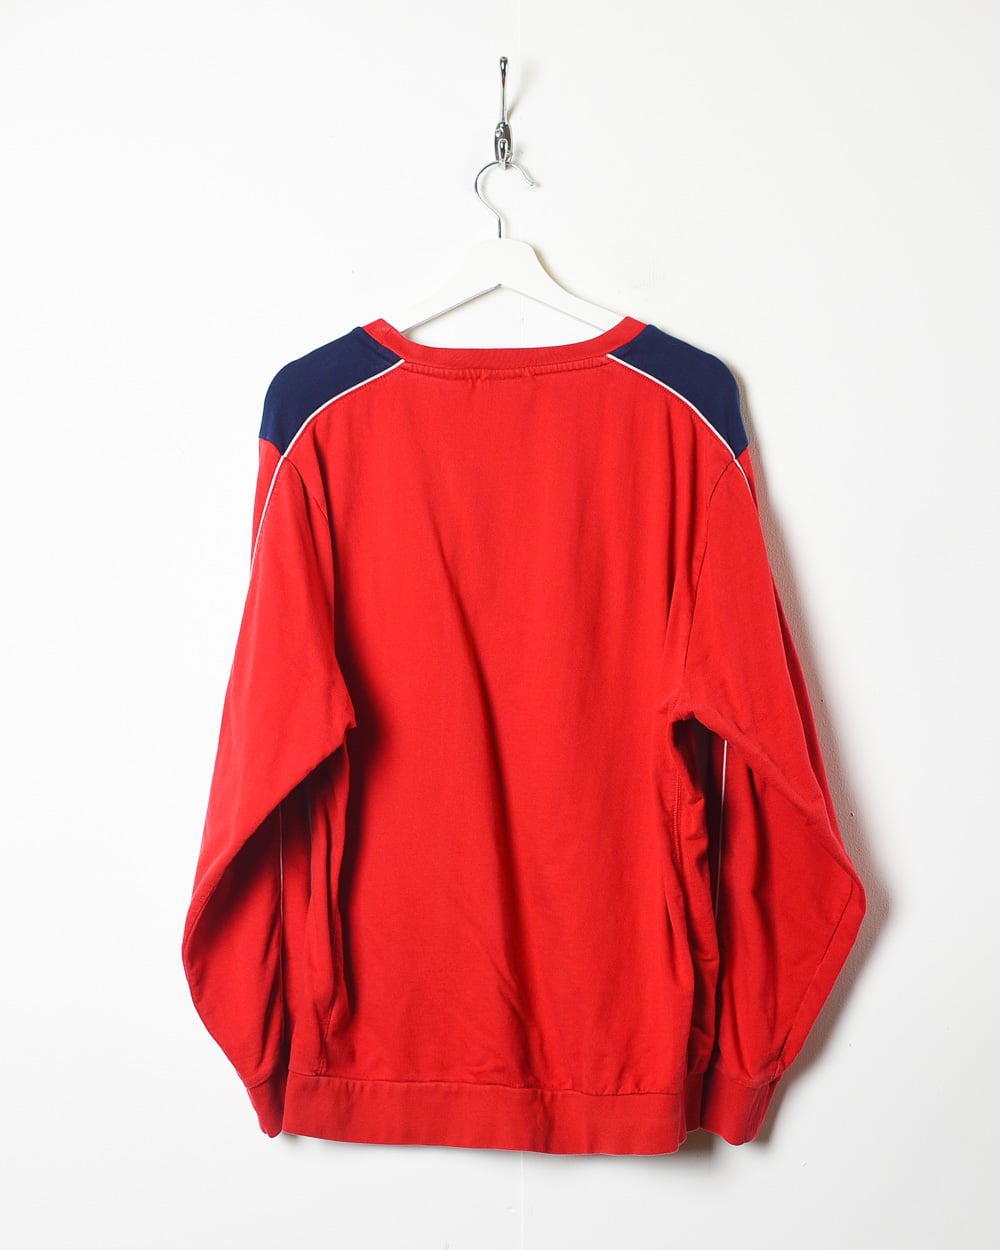 Red Fila Italia Sweatshirt - Large